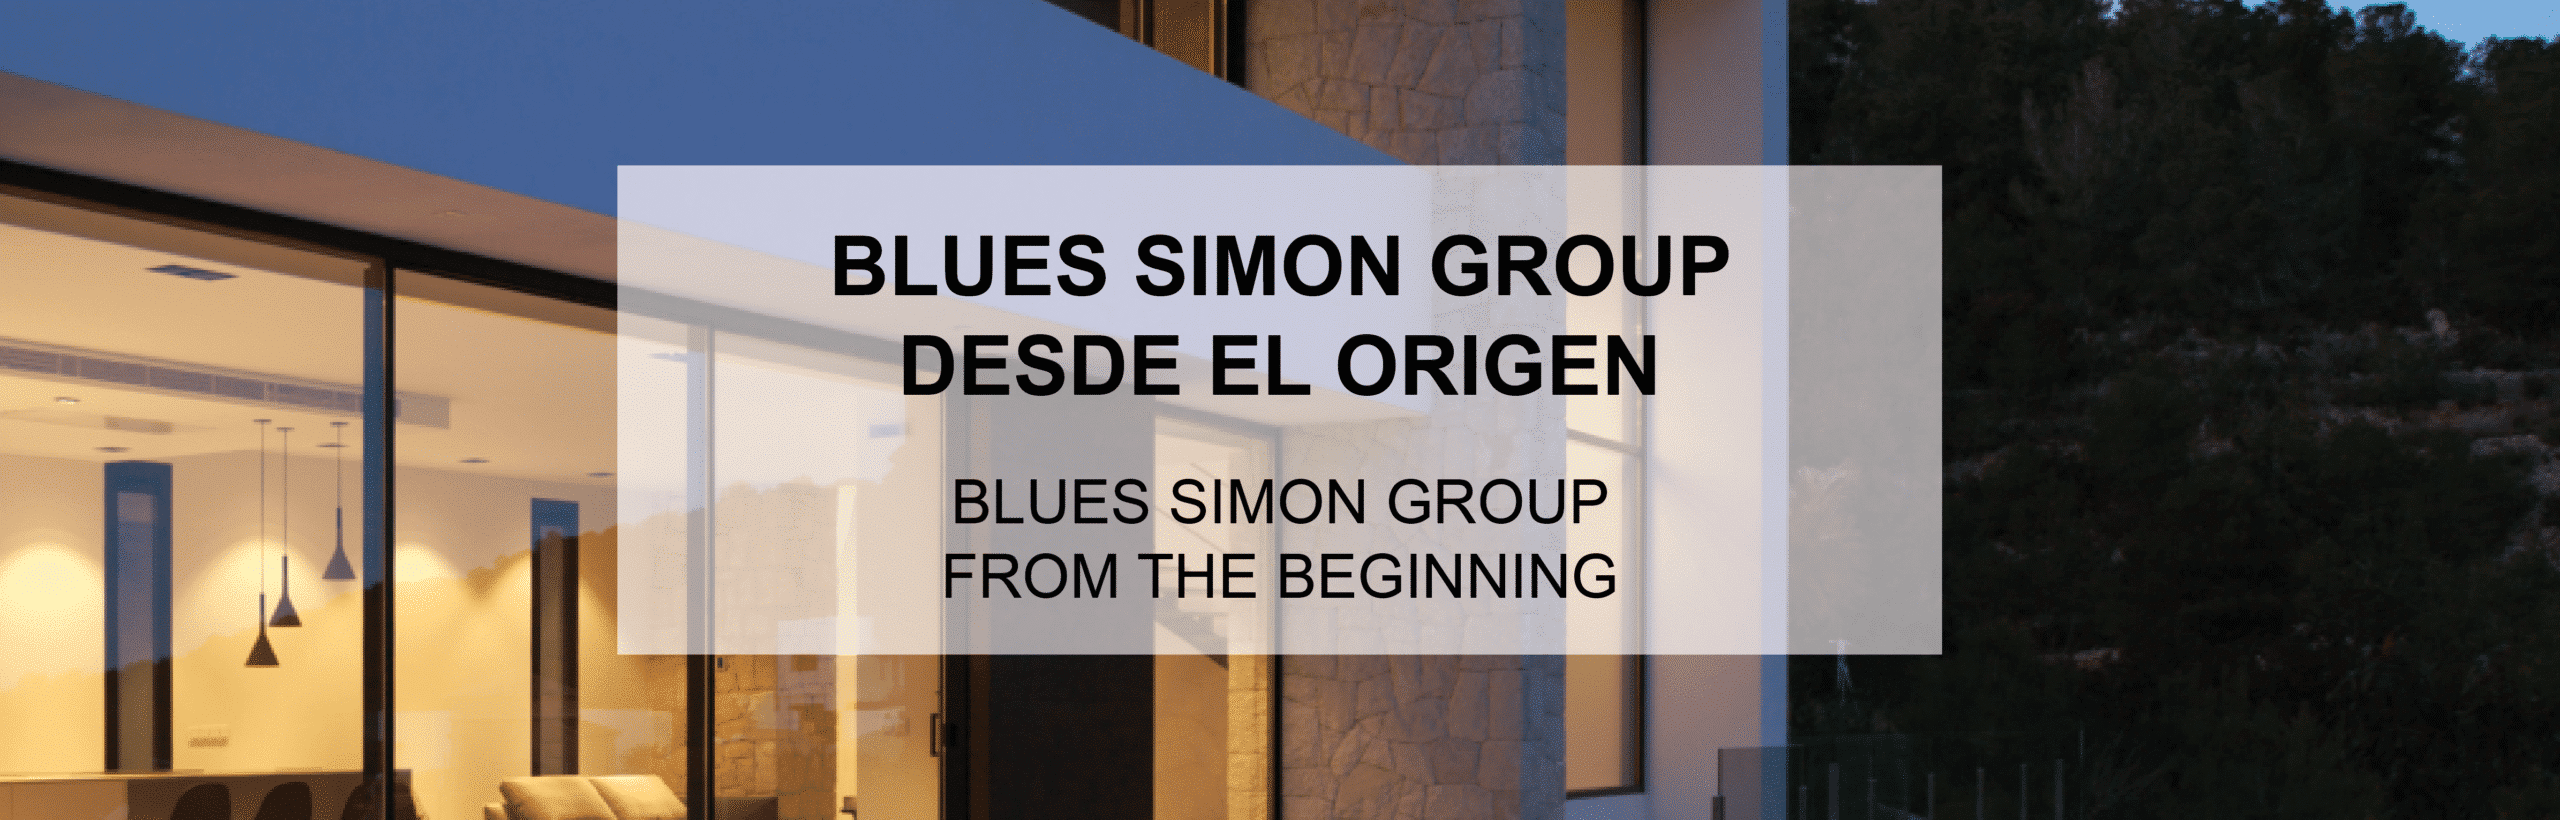 Blues Simon Group: el origen